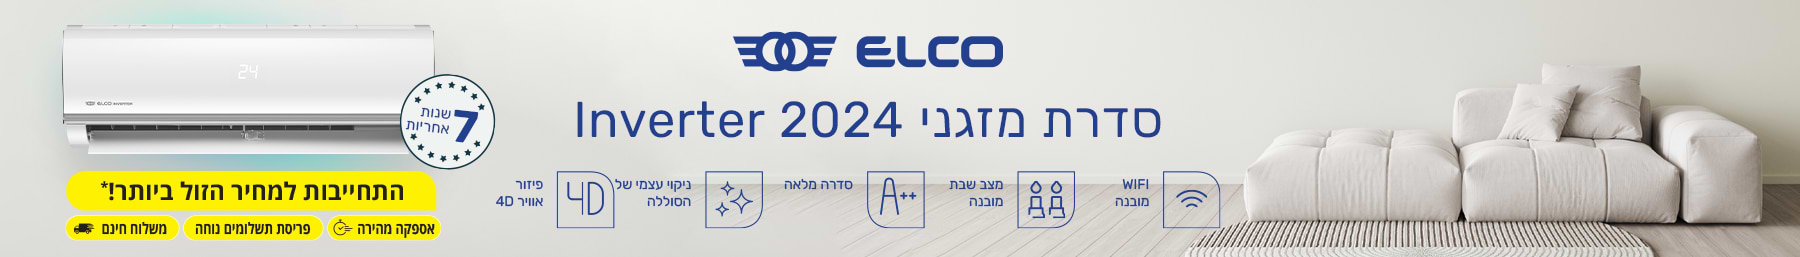 ELCO סדרת מזגני 2024 אינוורטר 7 שנות אחריות 